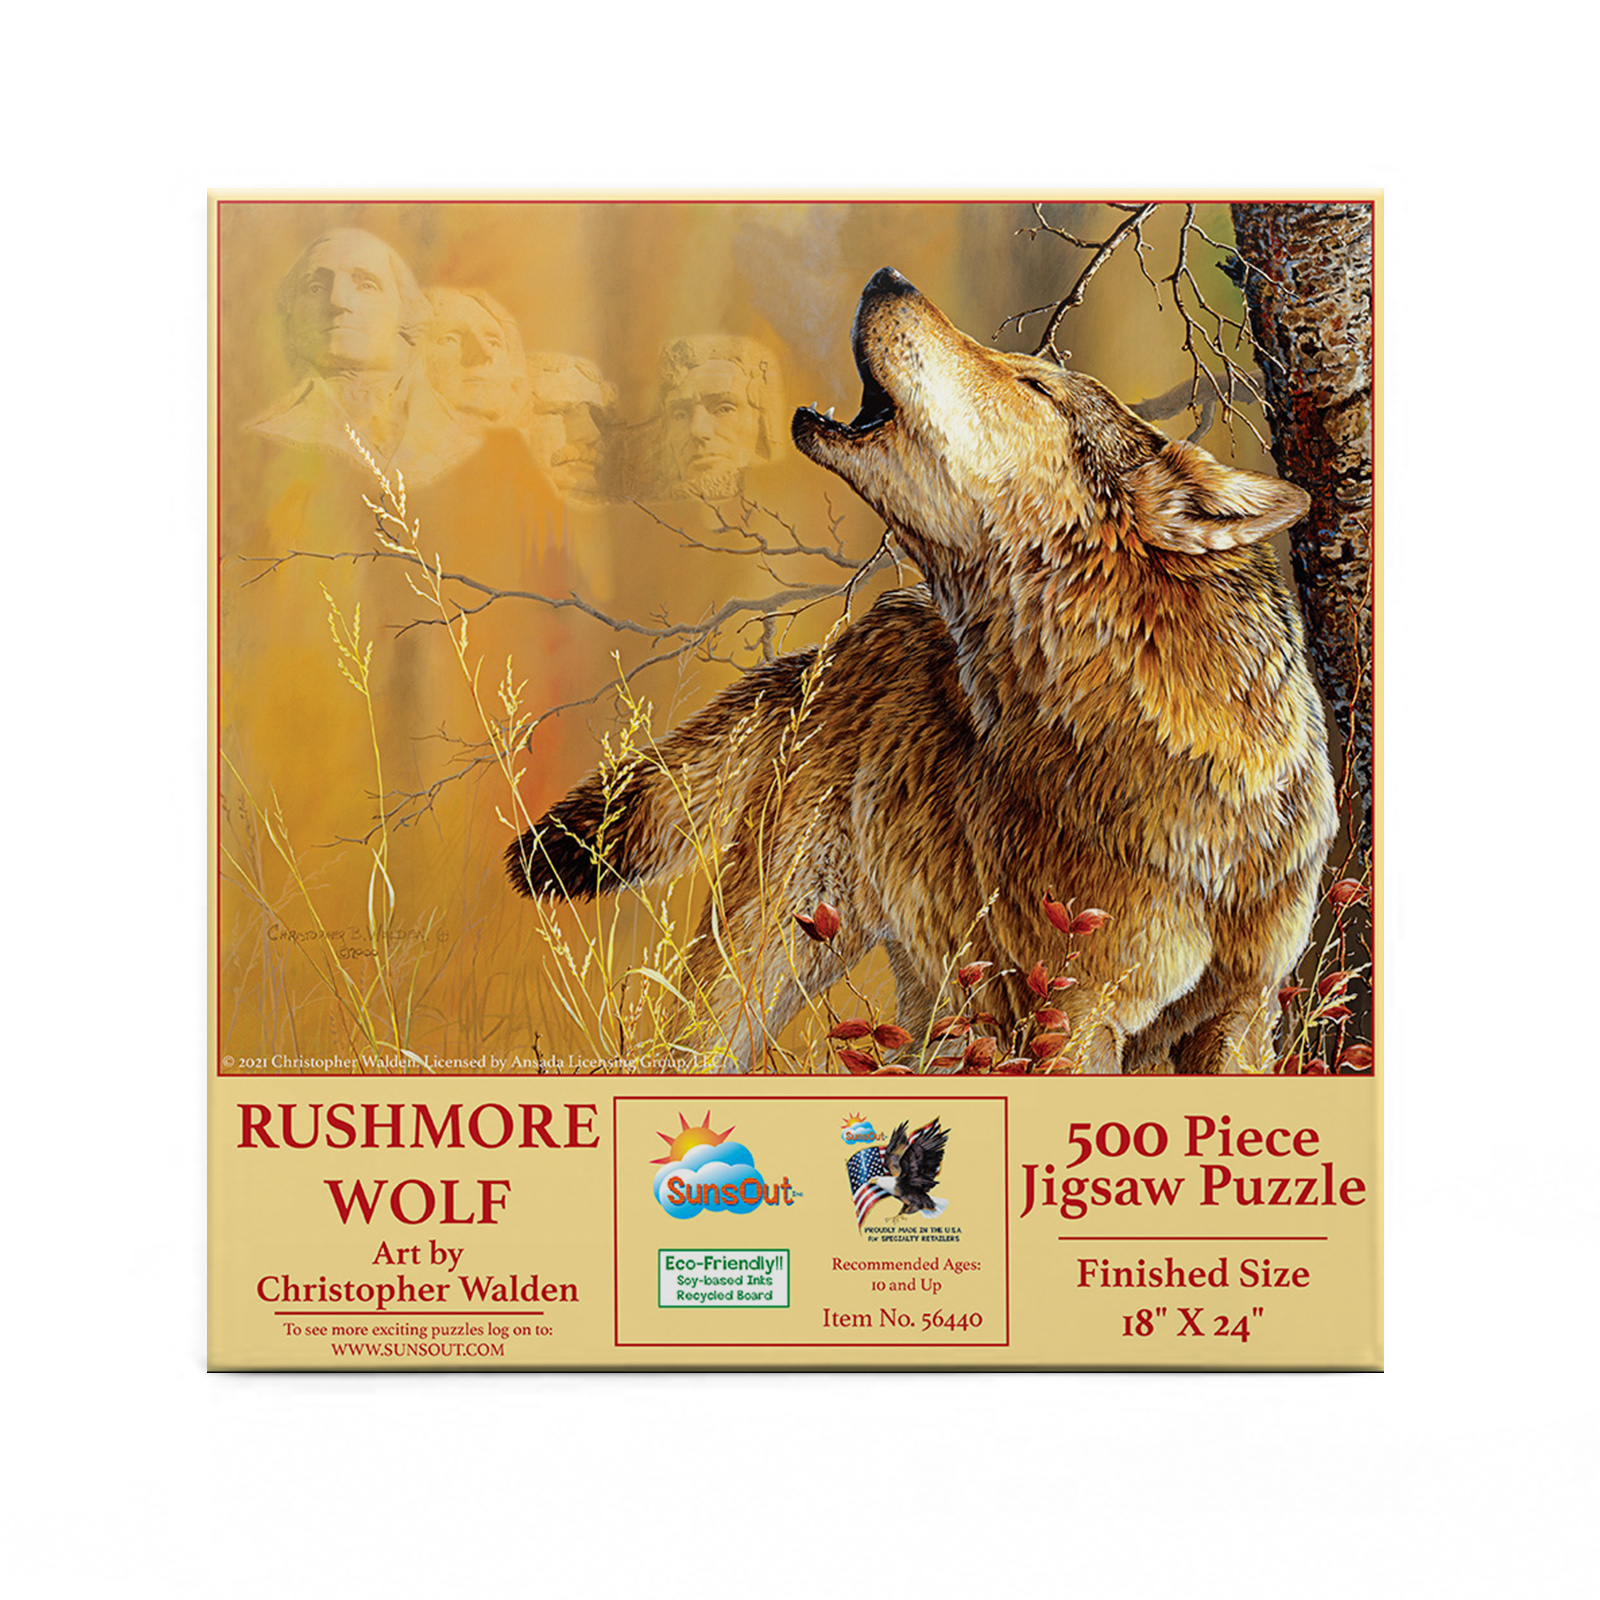 Rushmore Wolf